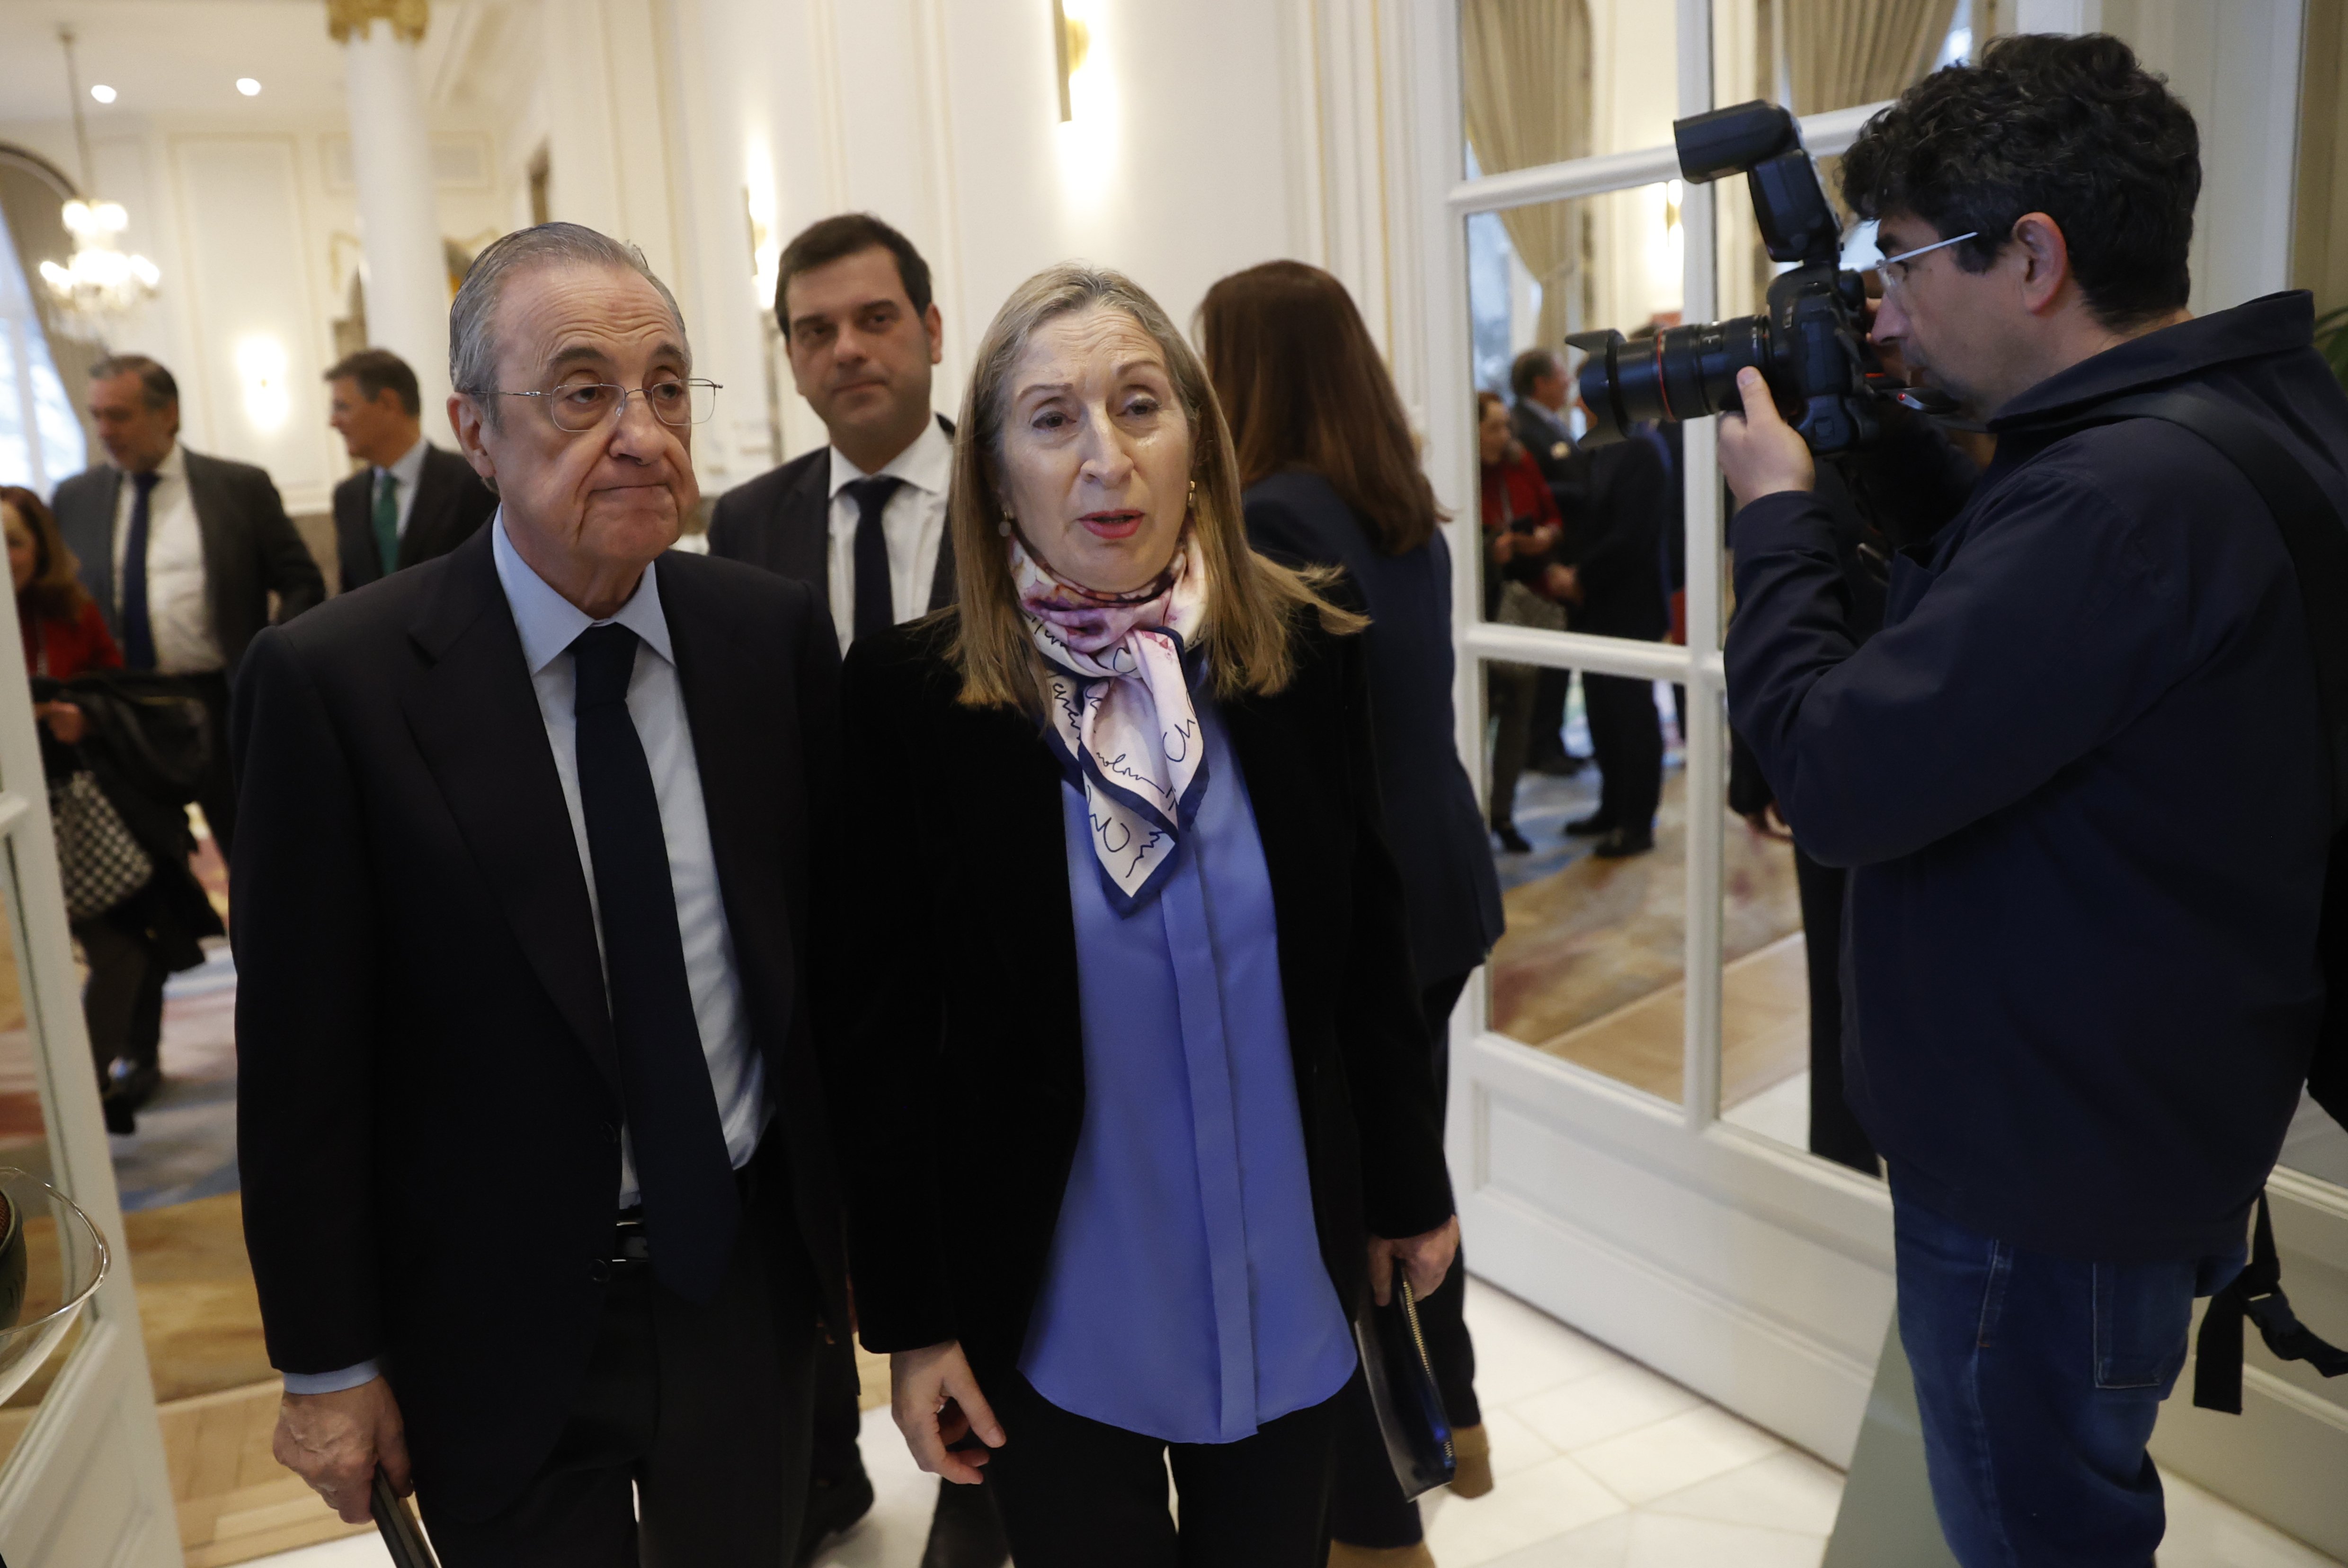 Florentino Pérez no perdona ni perdonará la traición y tiene las puertas del Real Madrid cerradas, no vuelve